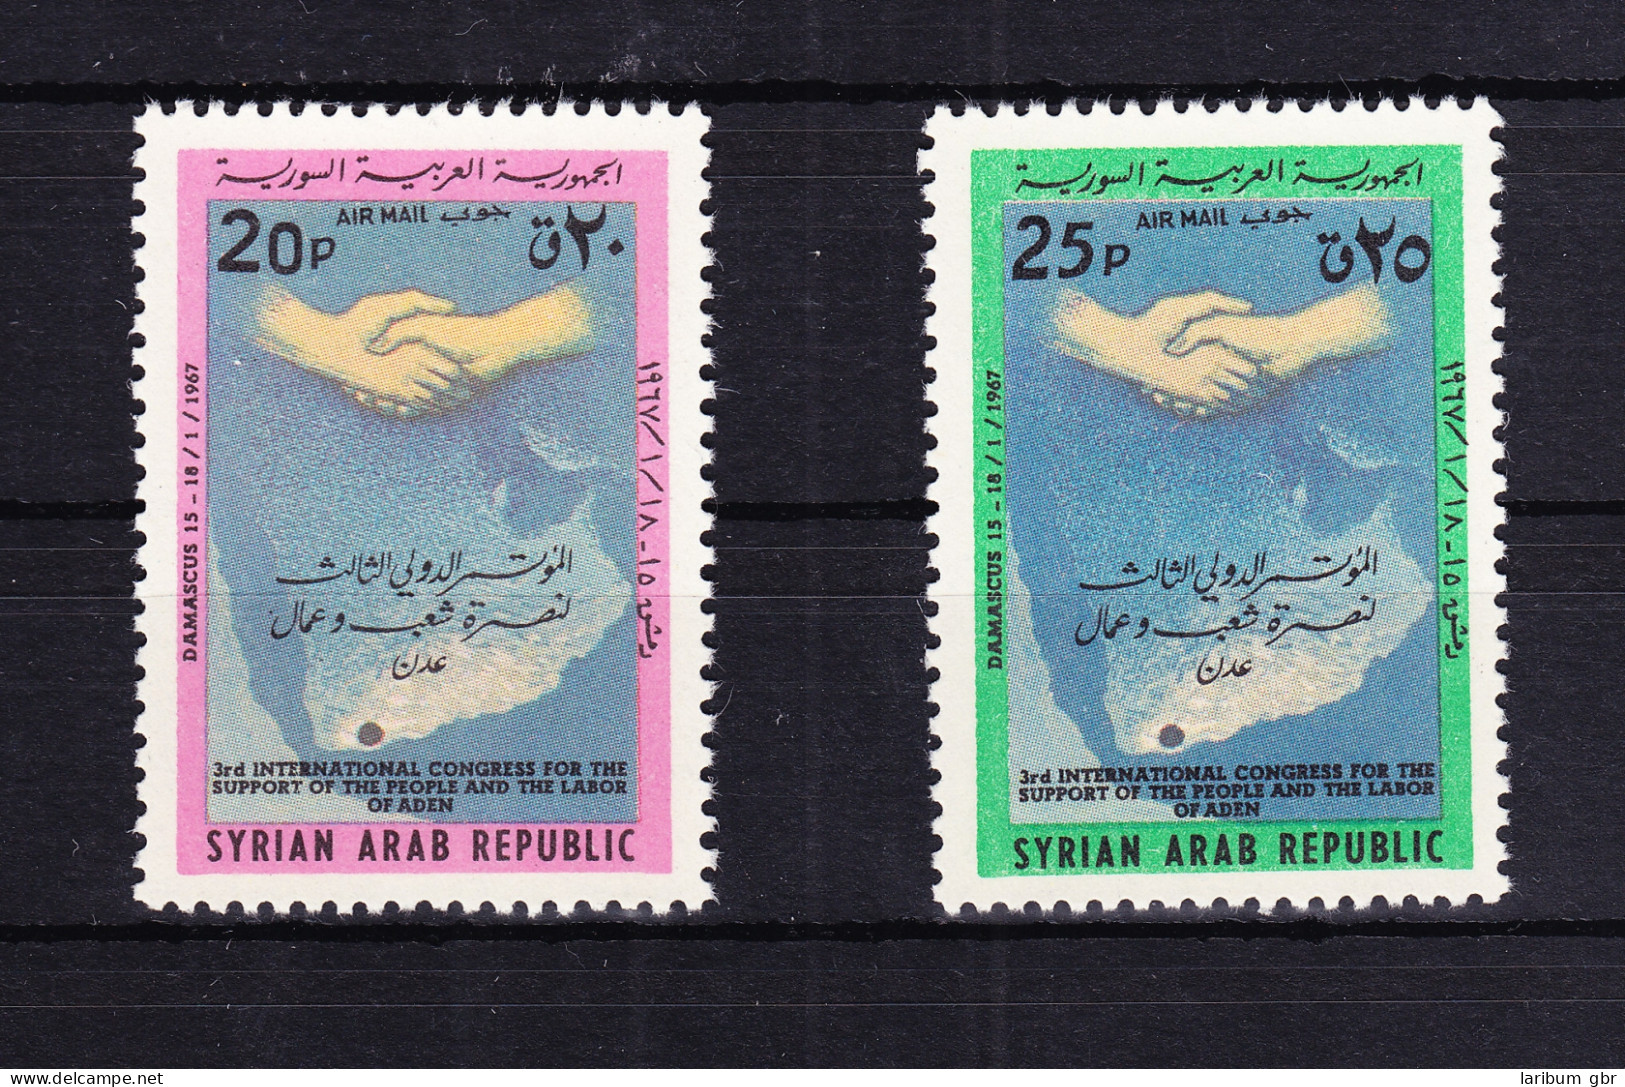 Syrien 959-960 Postfrisch Solidaritätskongreß Mit Aden, MNH #RB546 - Siria